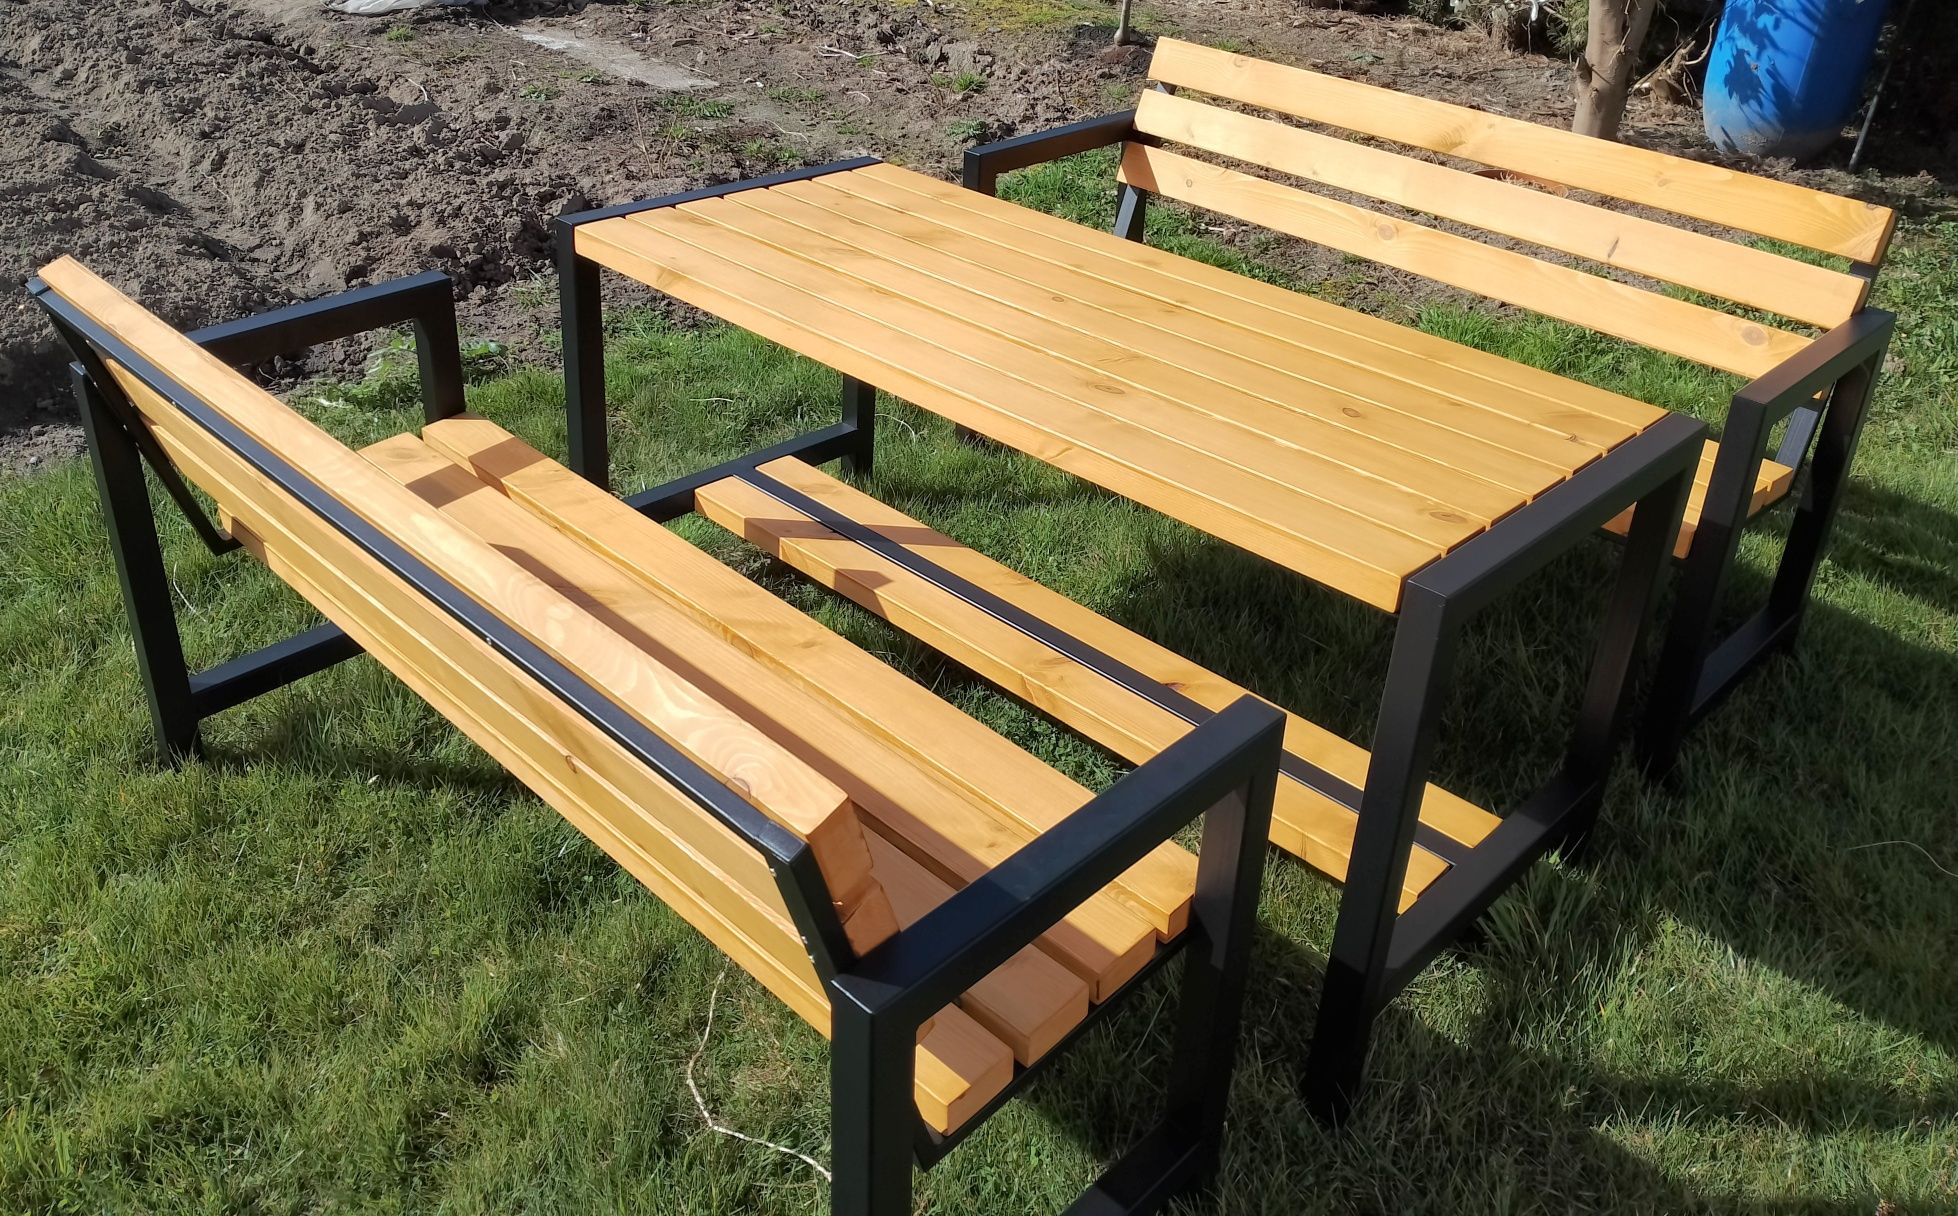 Zestaw ogrodowy stół+ dwie ławki